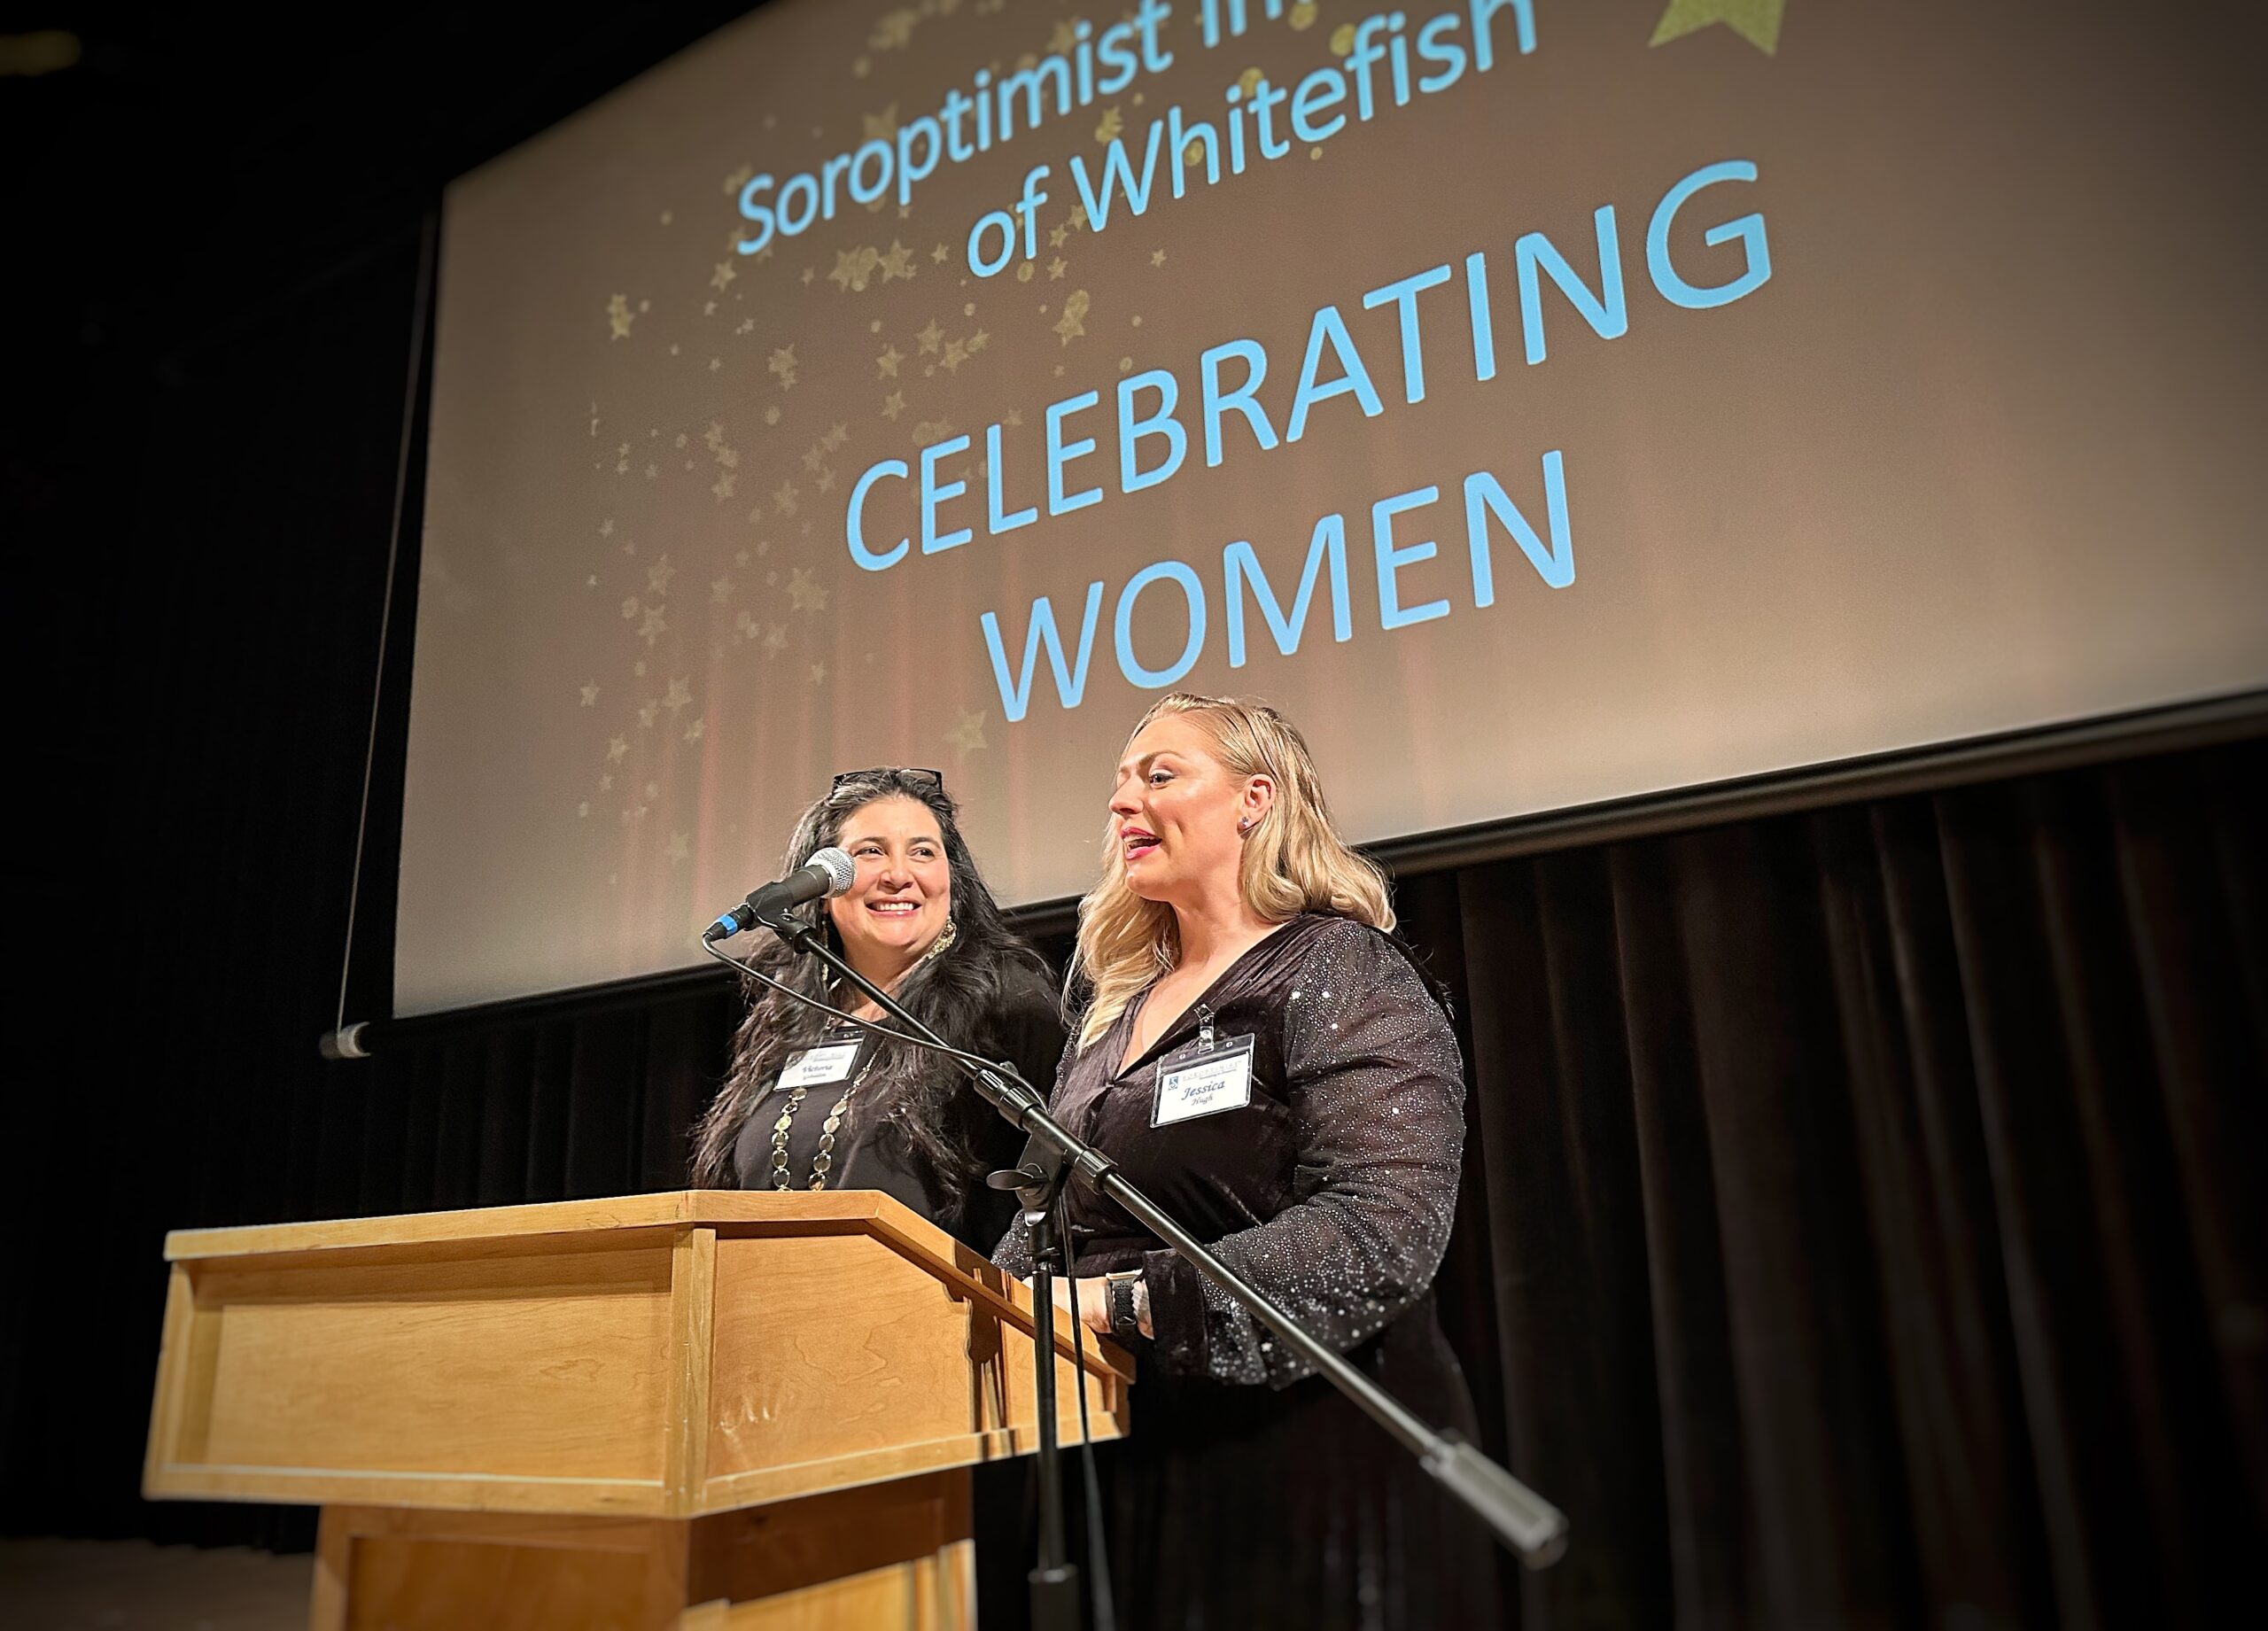 Soroptimist Whitefish Celebrating Women